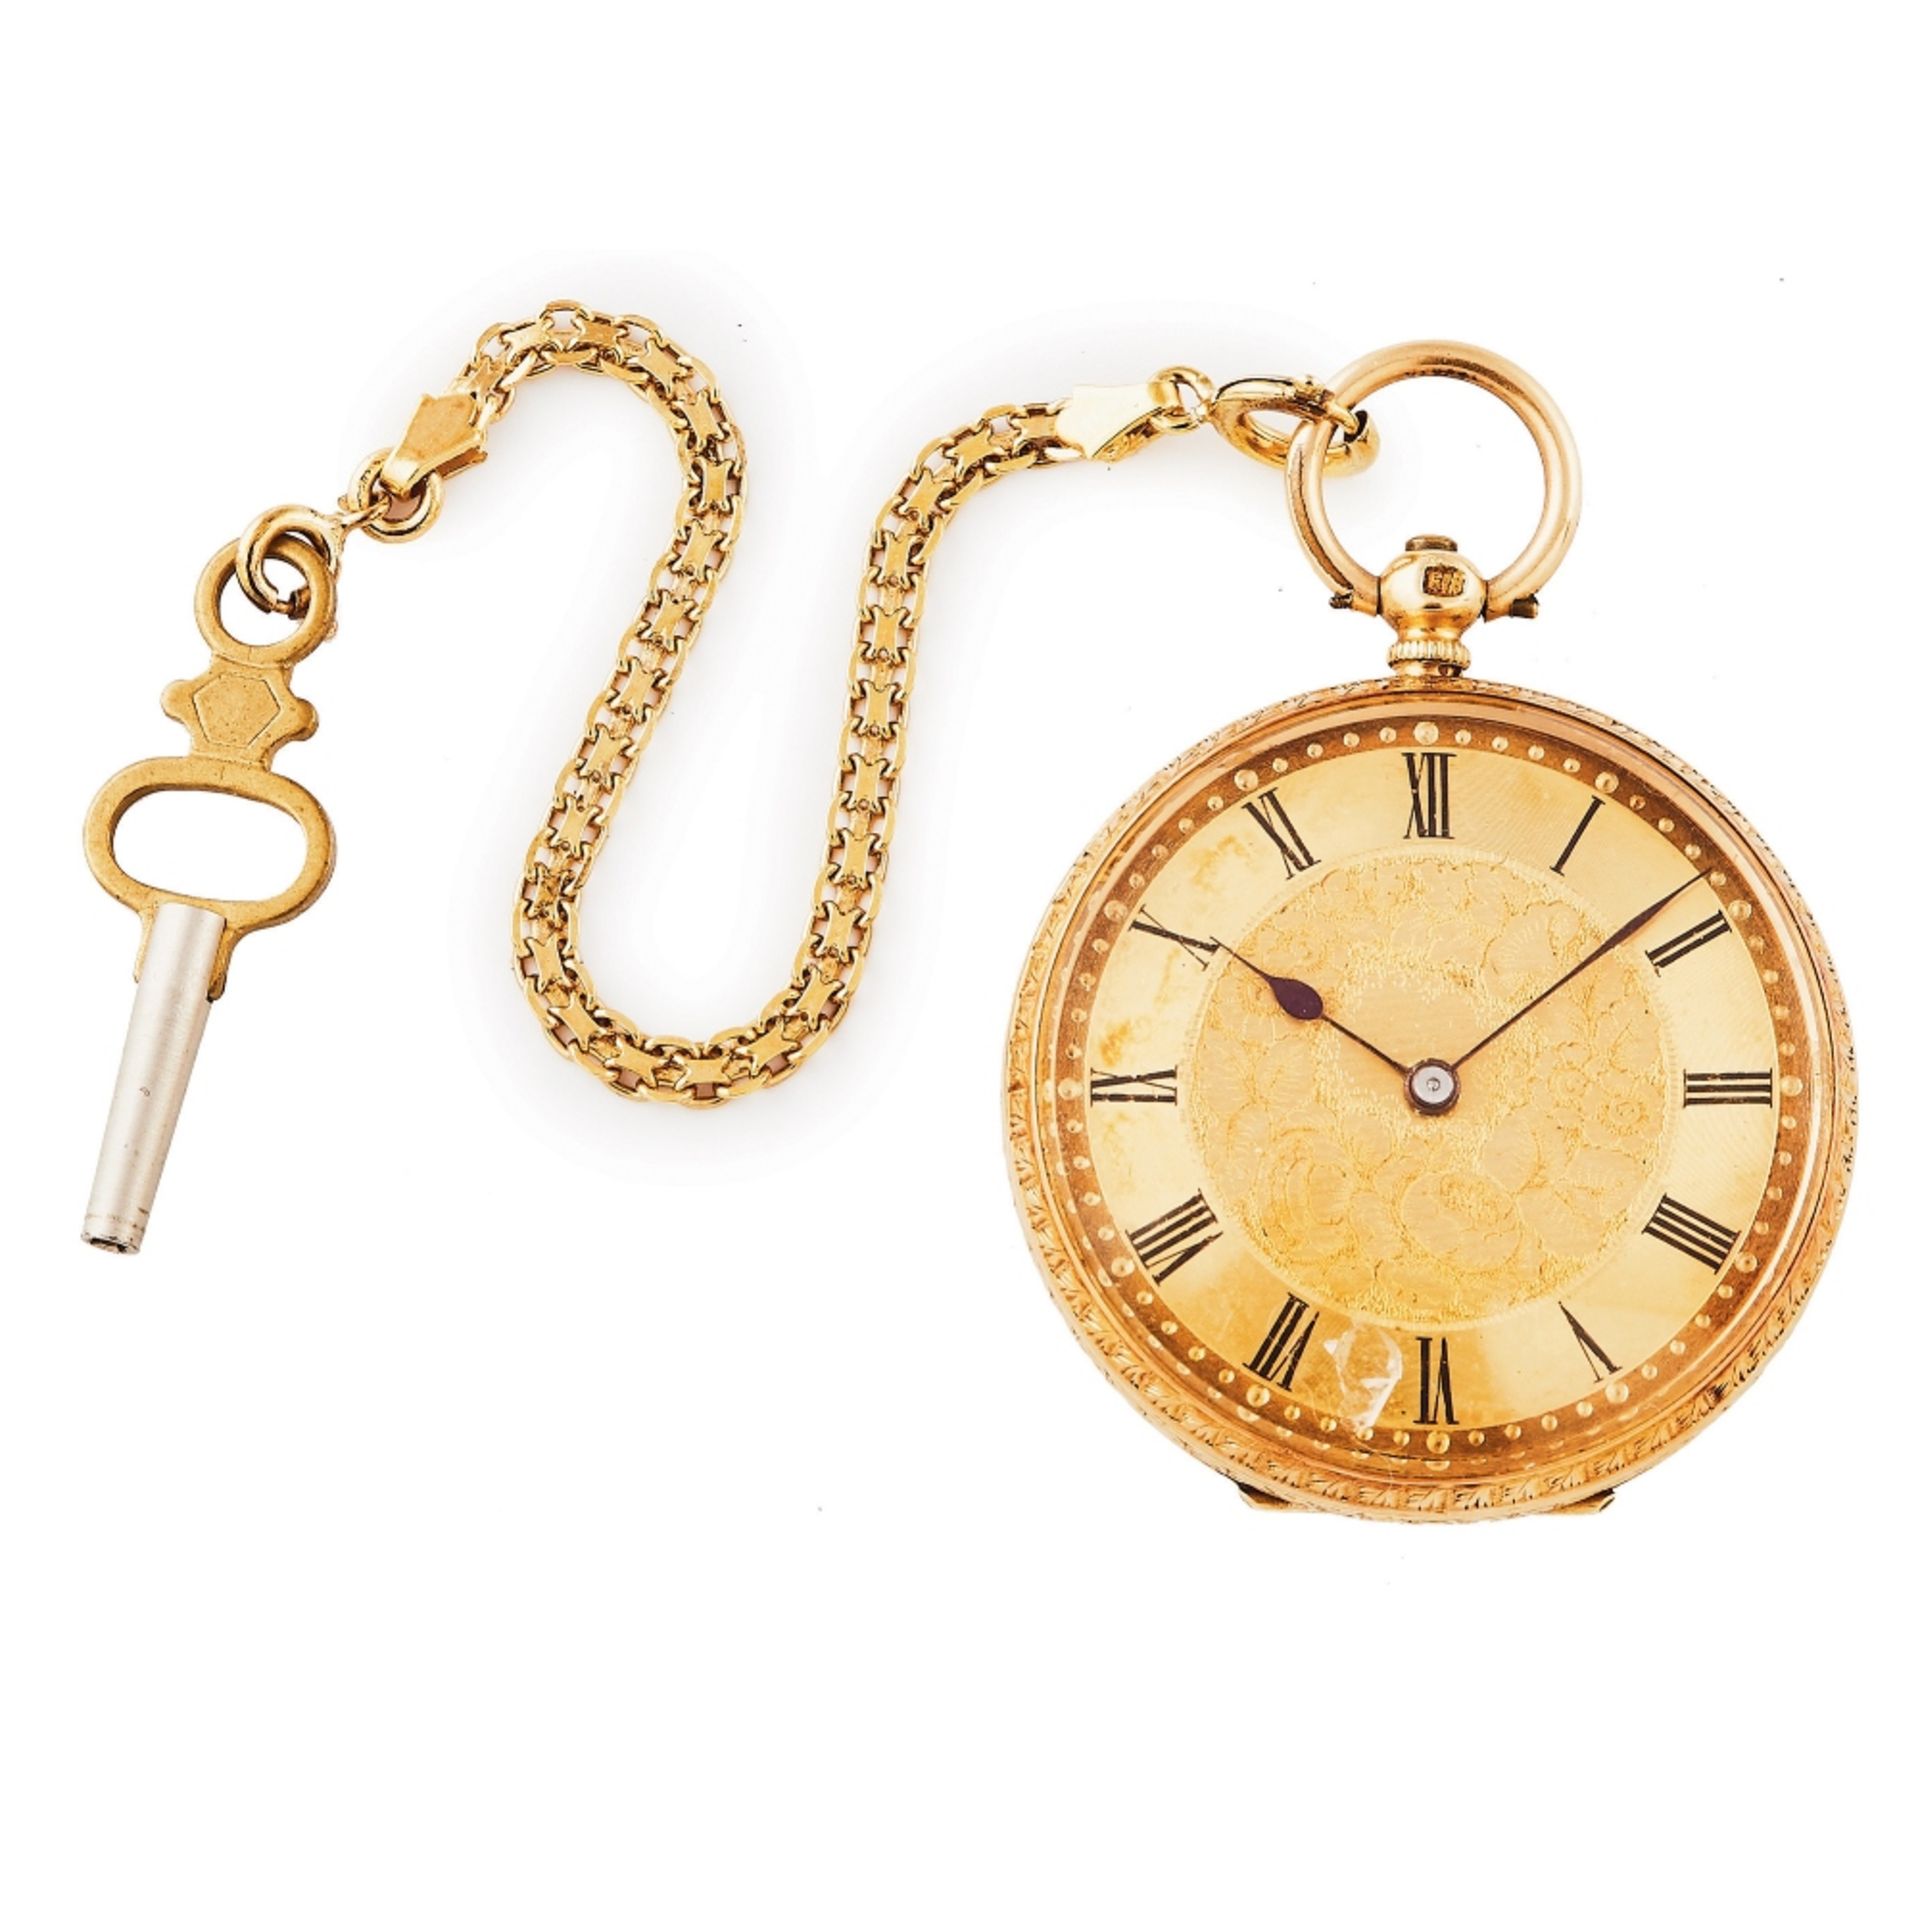 Reloj de bolsillo lepine en oro, c.1900.